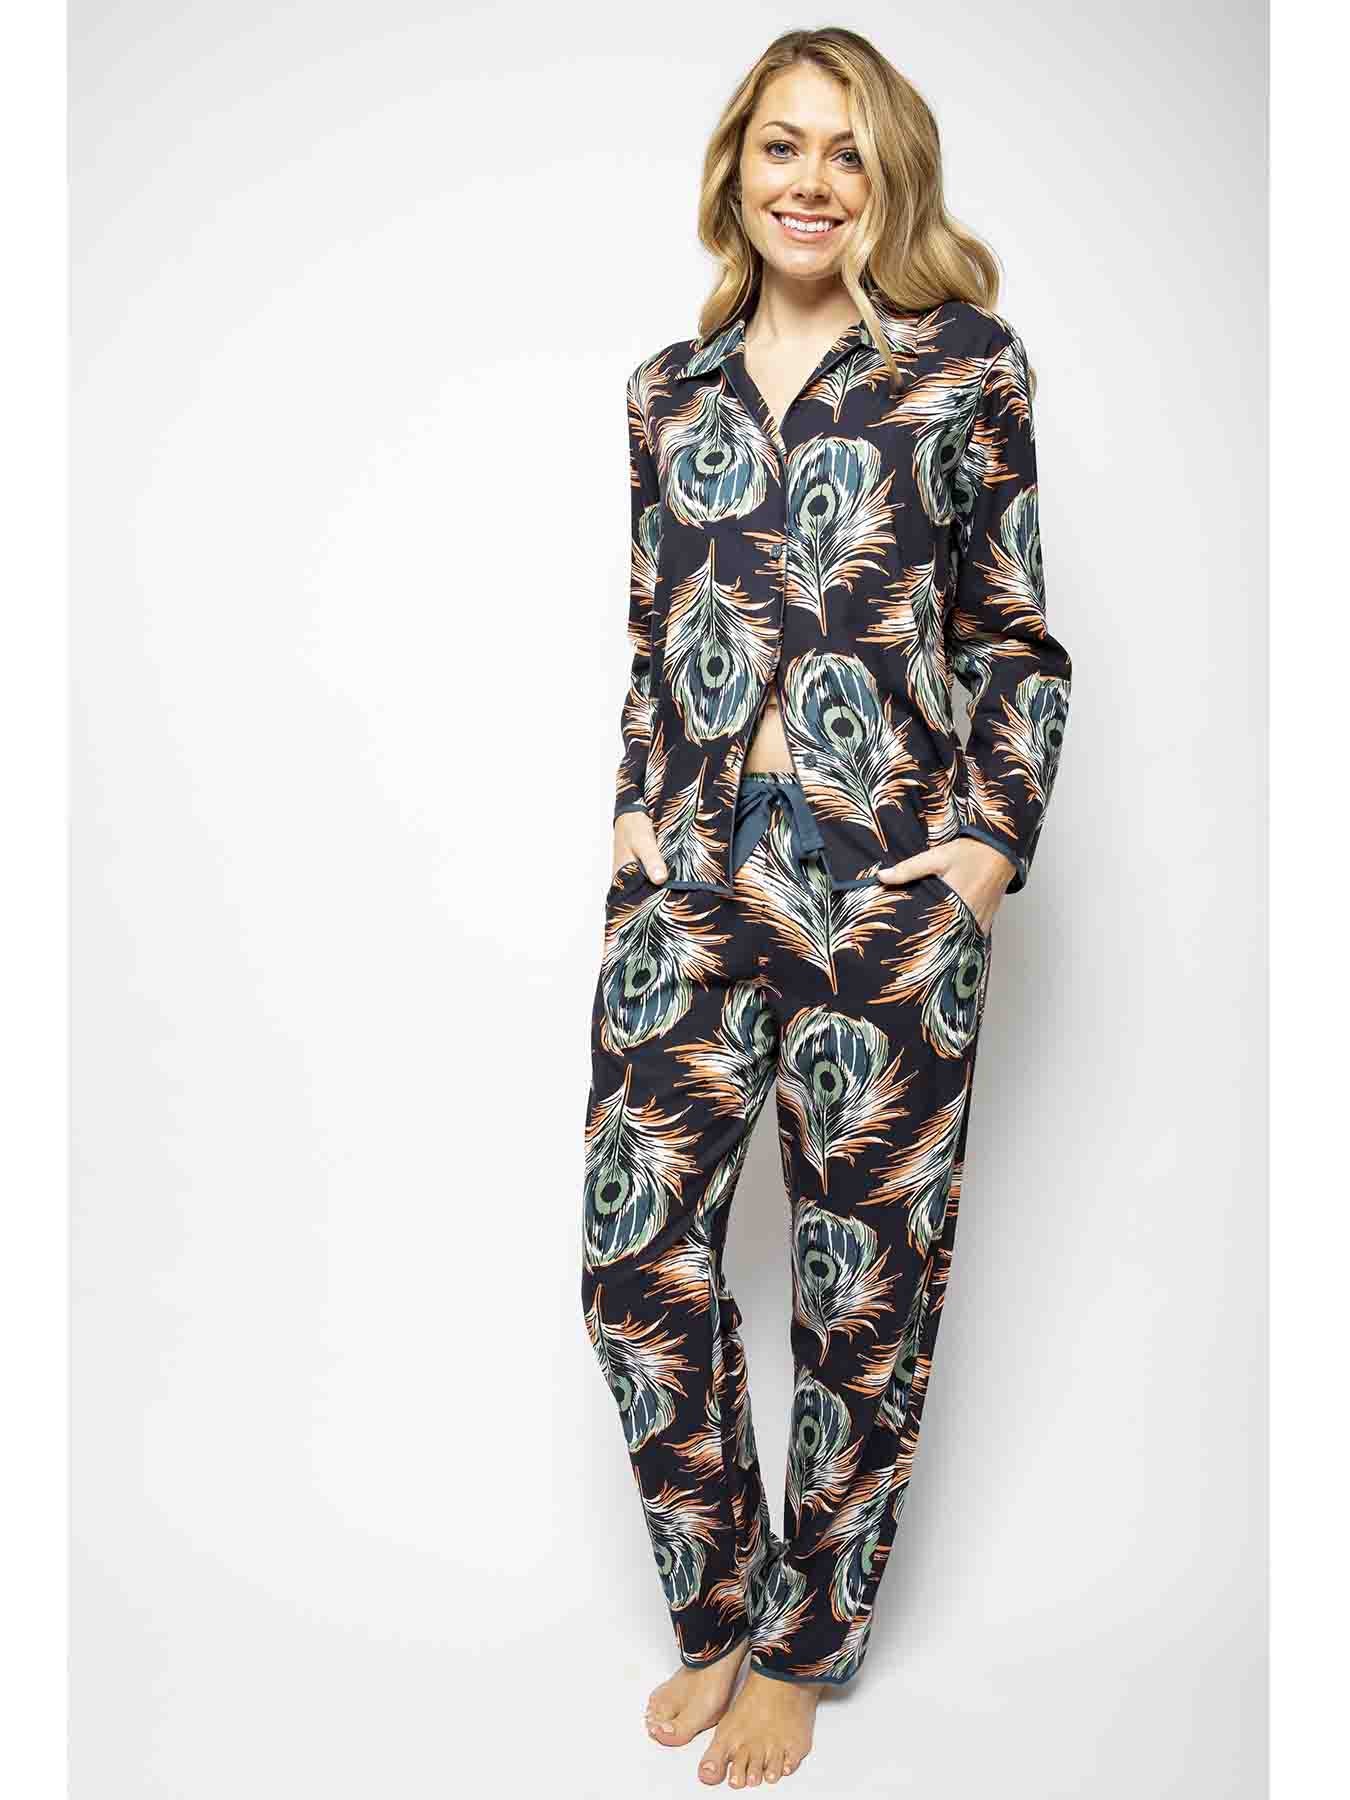 Cyperjammies Elena, Frau in einem Pyjama mit Pfauenfeder-Druck mit langen Ärmeln und langer Hose 